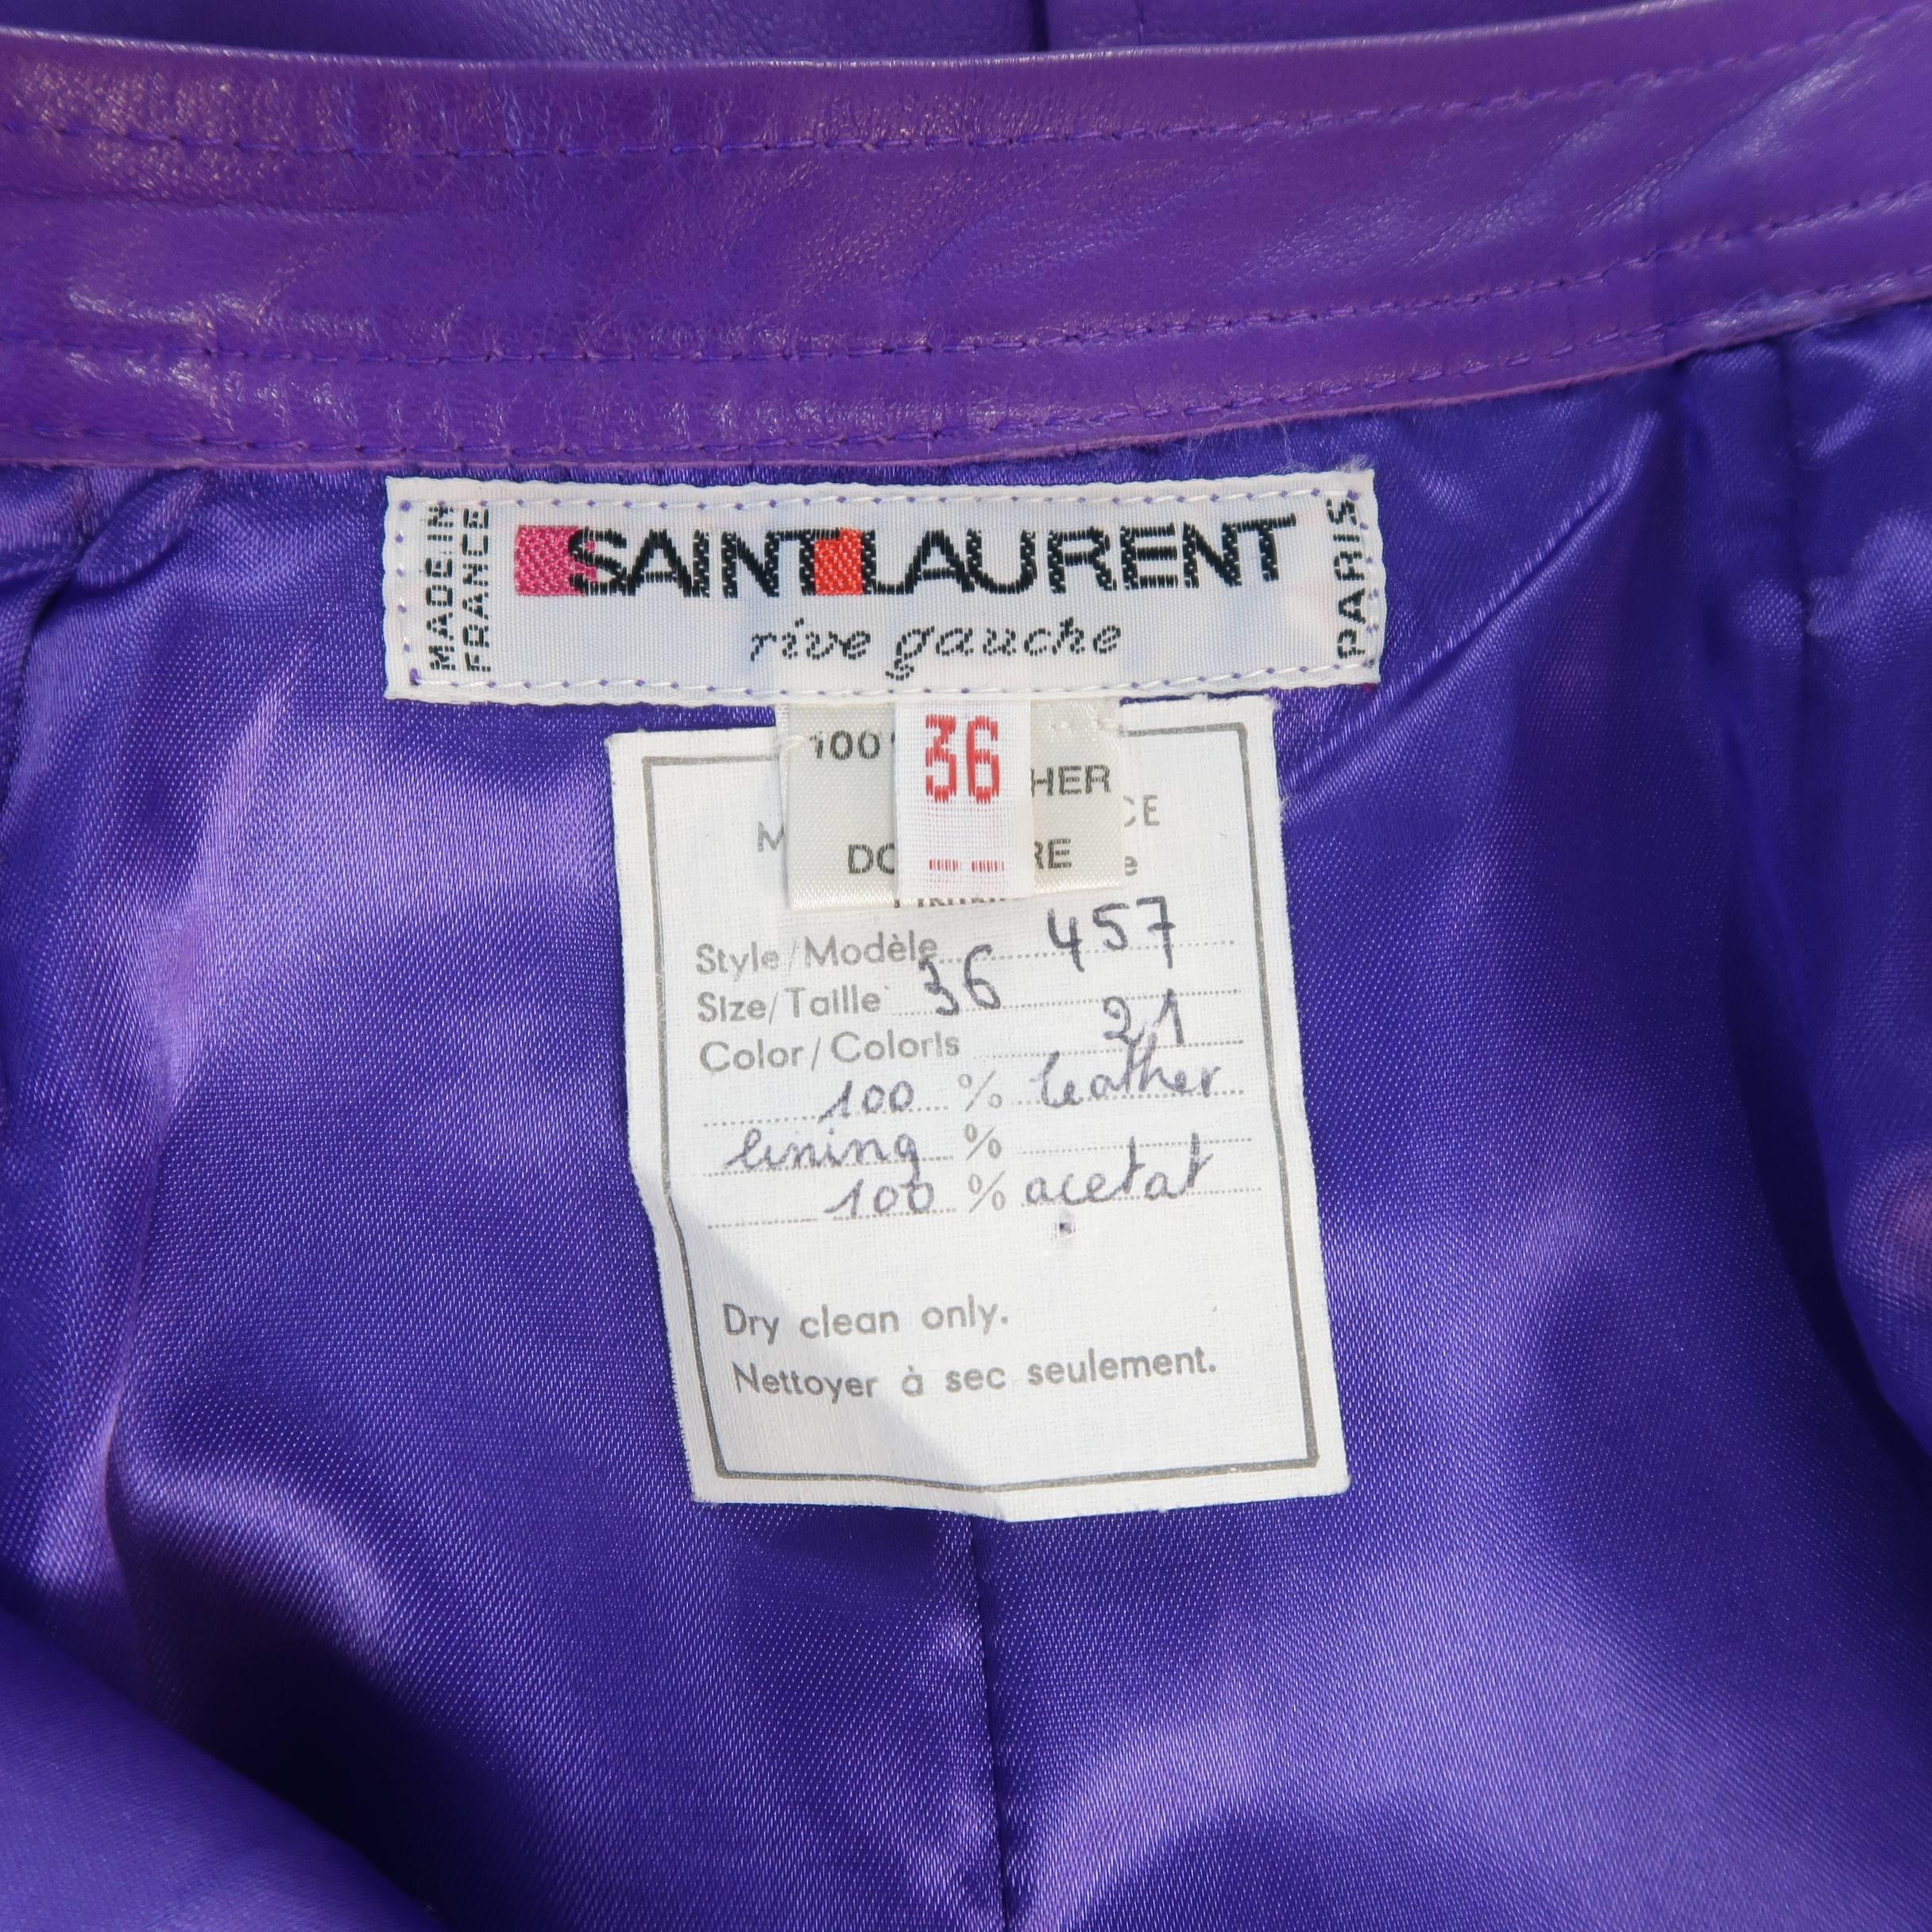 YVES SAINT LAURENT Rive Gauche Size 4 Purple Leather Pencil Skirt 1